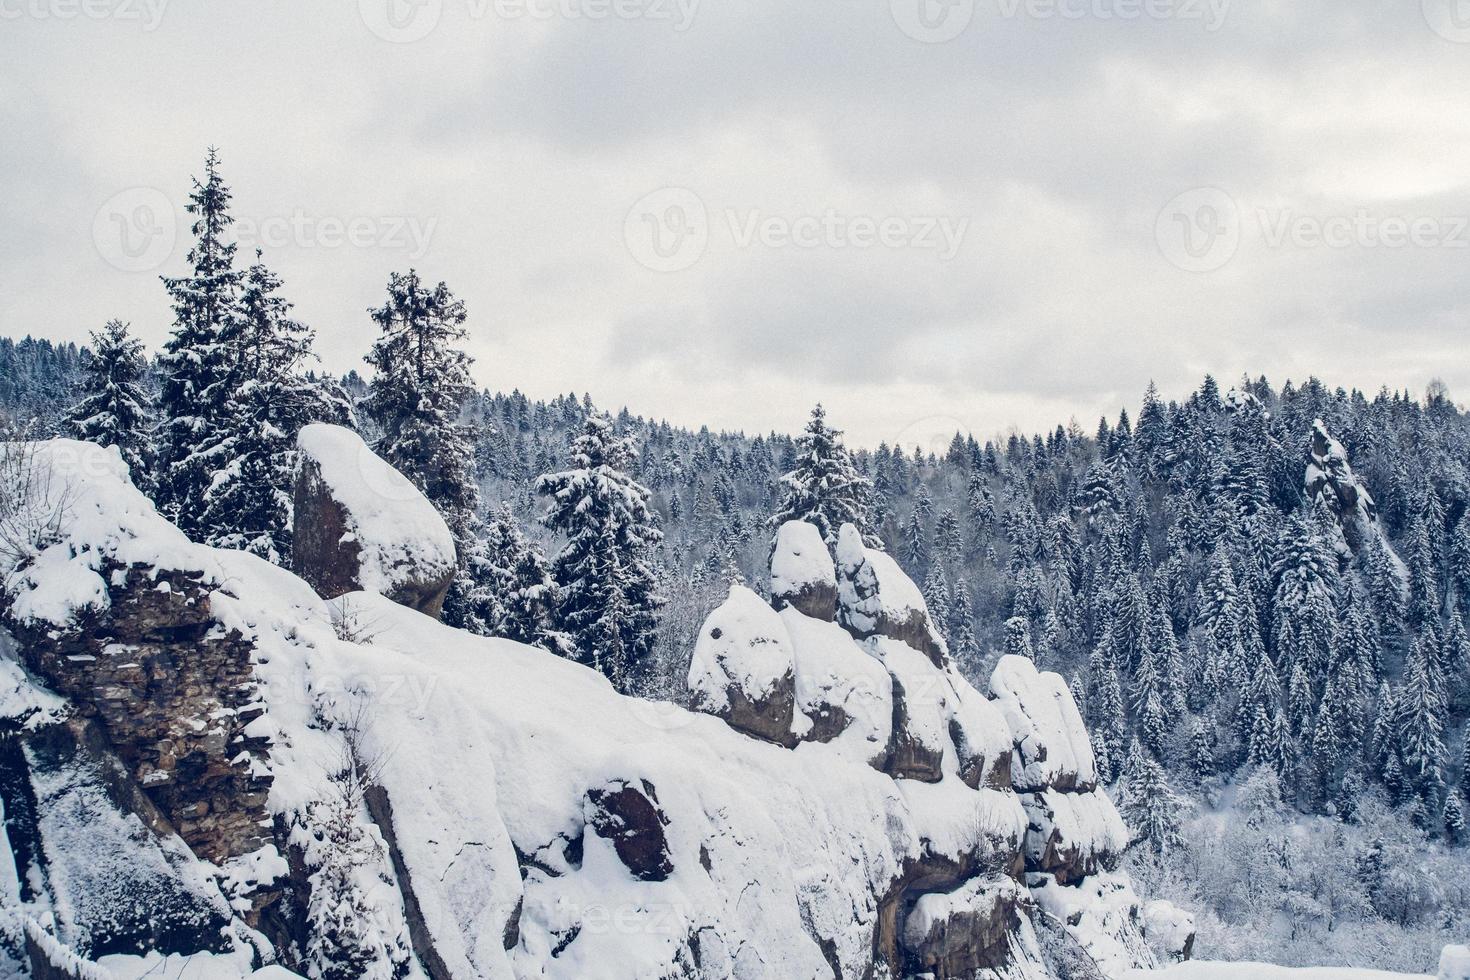 grupo de pinheiros cobertos de neve. floresta coberta de neve nas montanhas foto